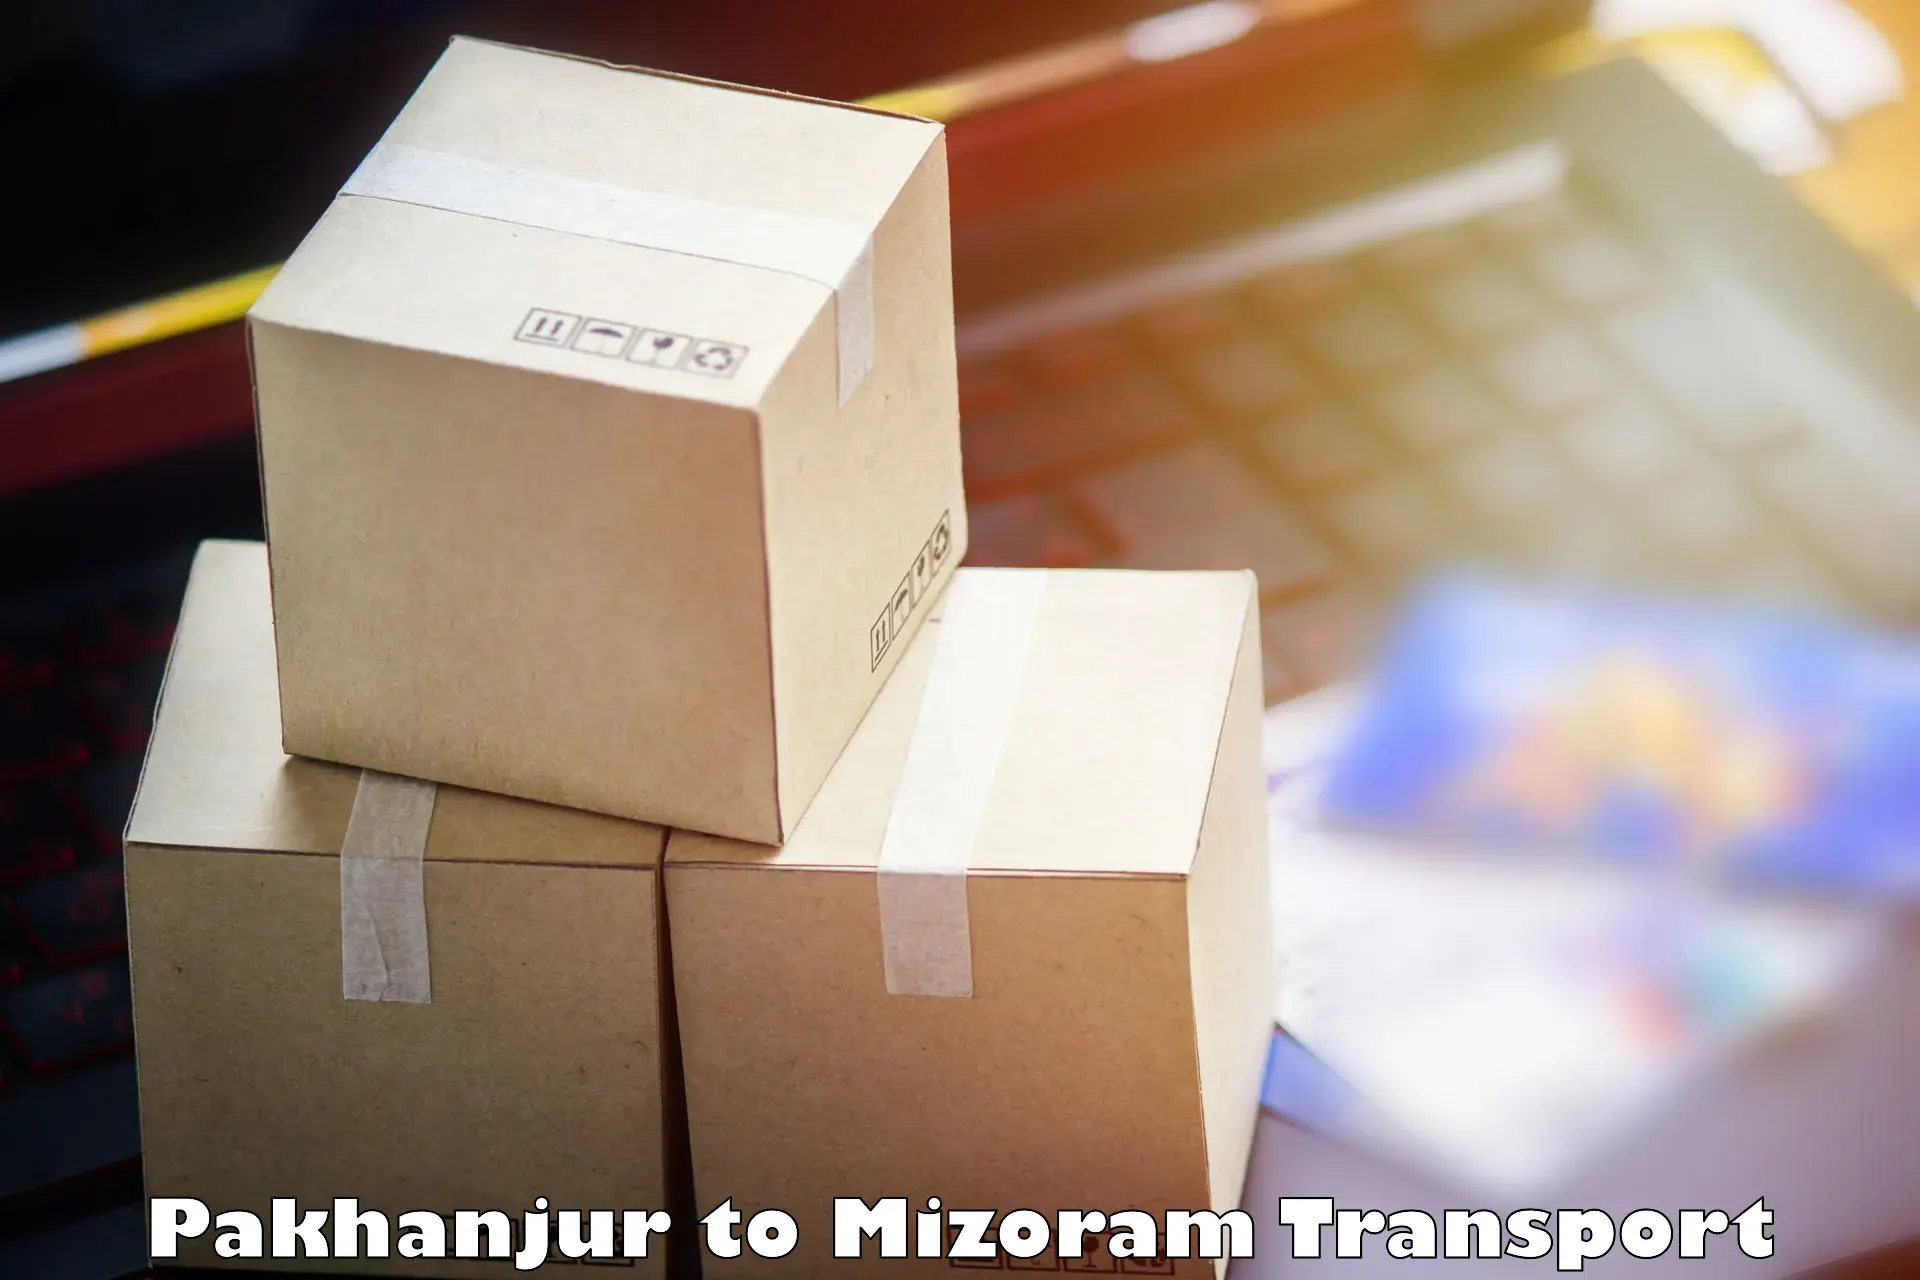 Road transport services Pakhanjur to Mizoram